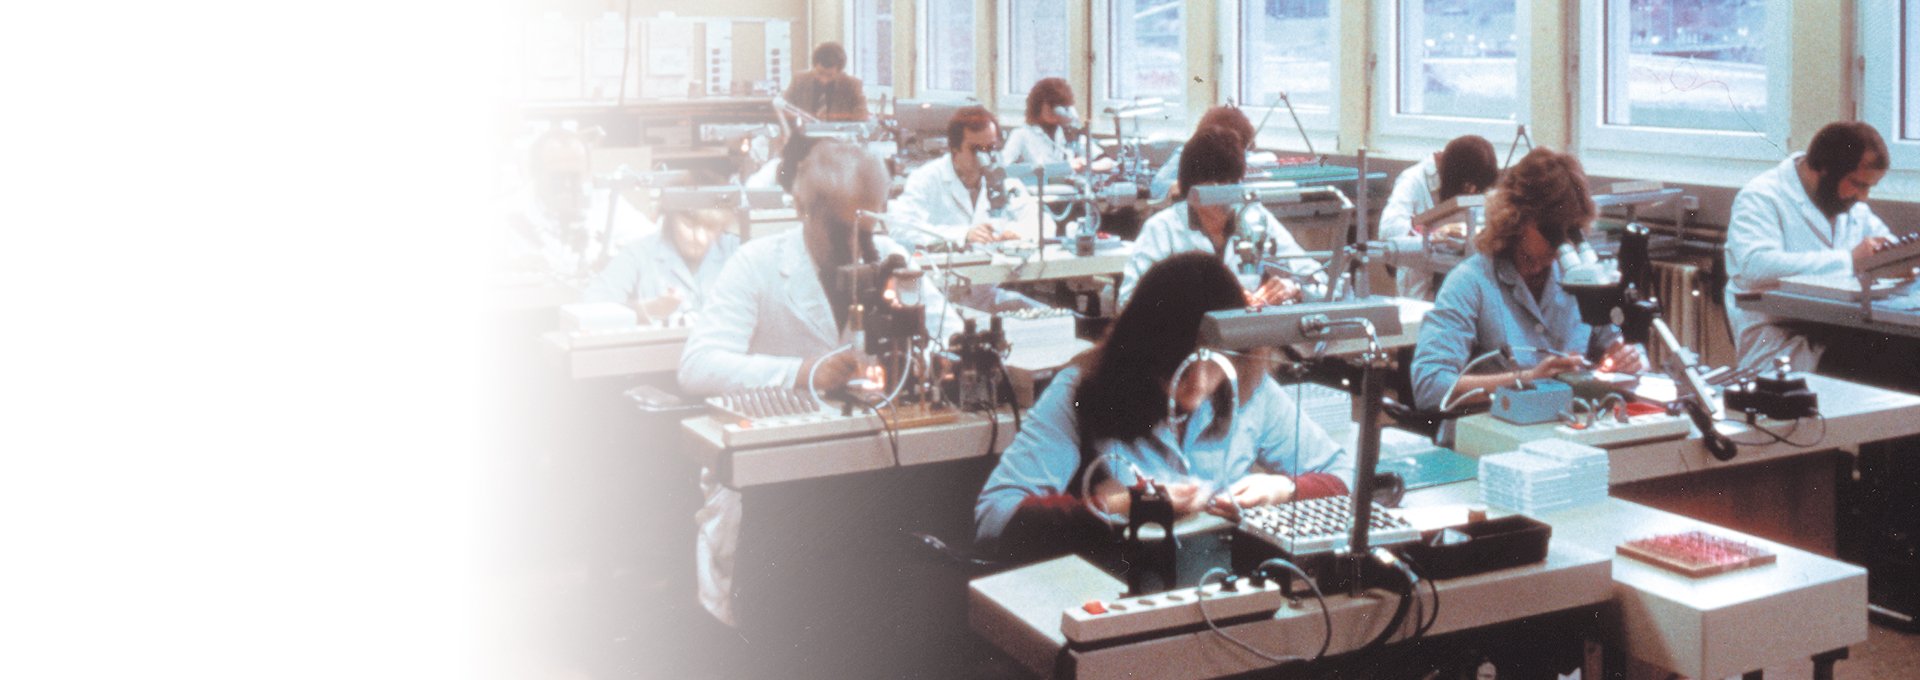 Stare zdjęcie pokoju pełnego pracowników, pracujących przy produkcji aparatów słuchowych Bernafon, 1989